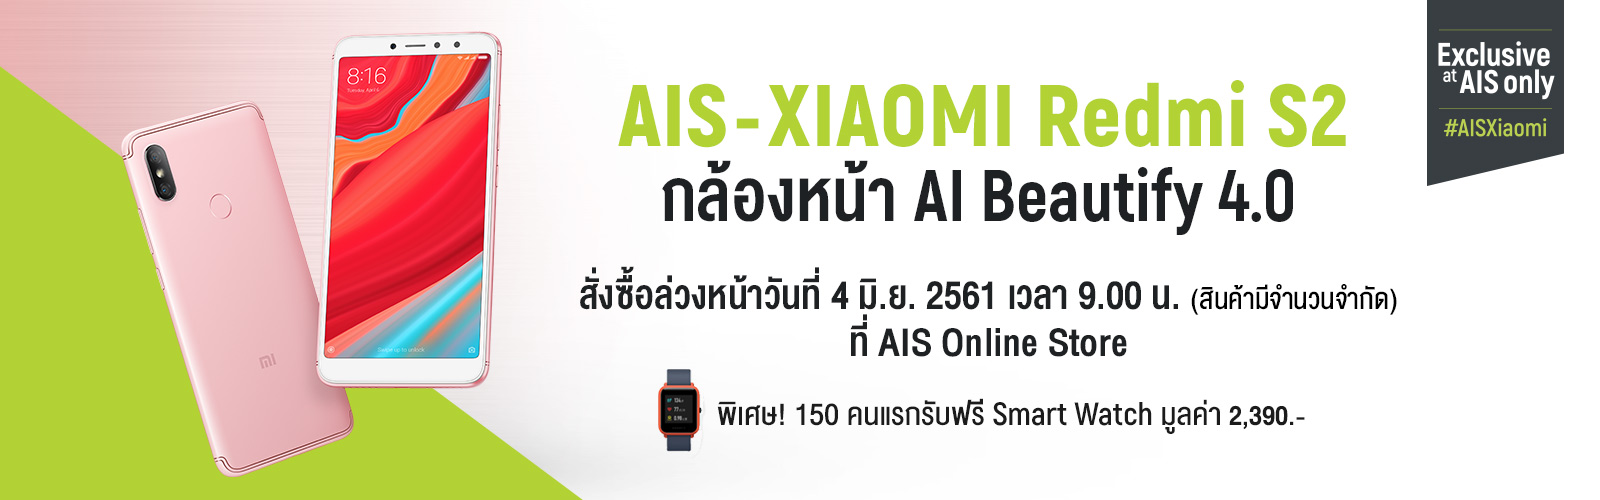 AIS Xiaomi Redmi S2 Review